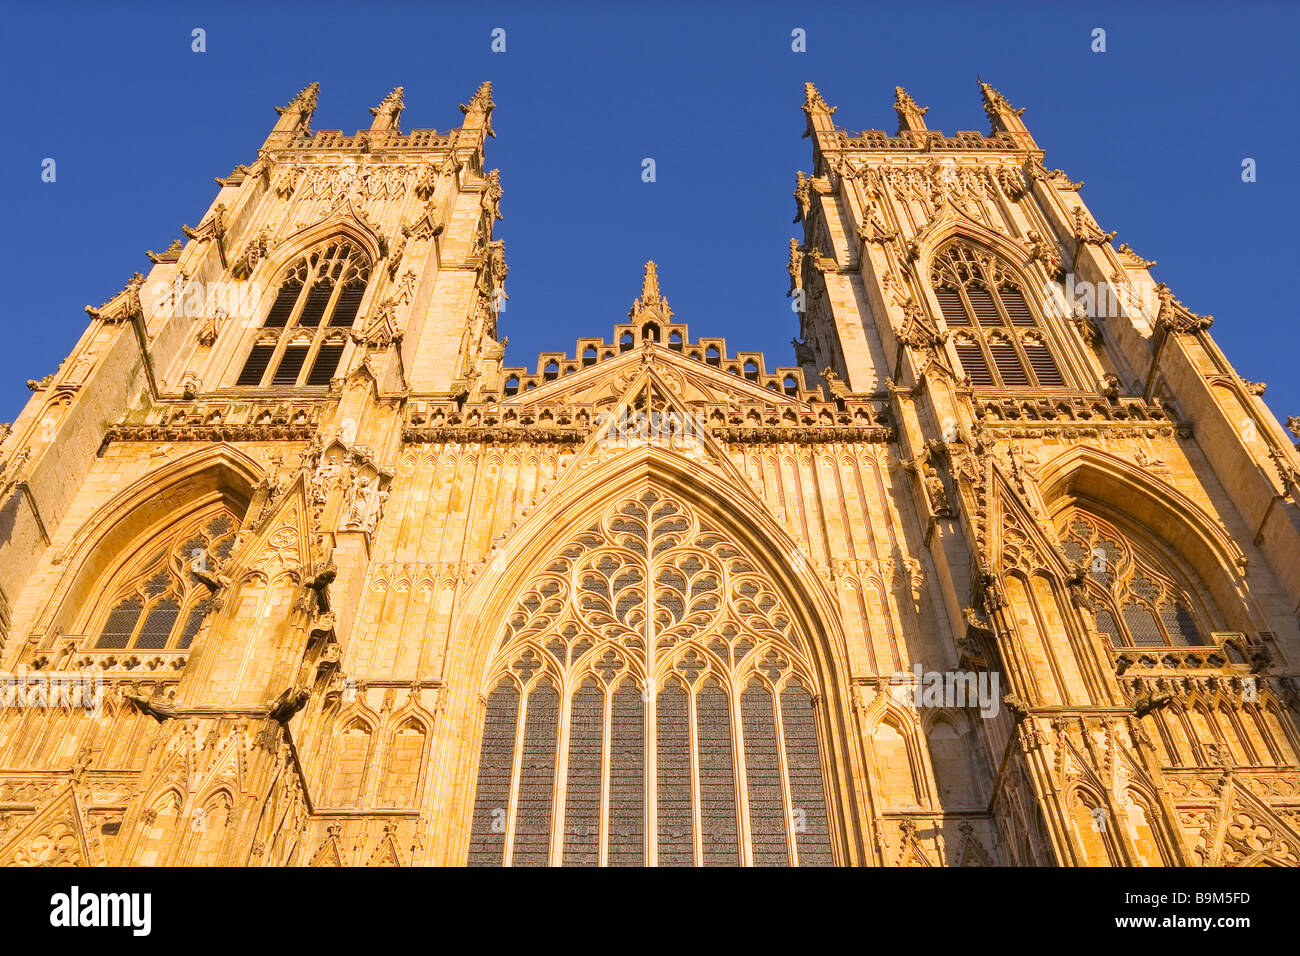 La grande fenêtre de l'Ouest et les deux tours de l'ouest de York Minster Cathédrale gothique Banque D'Images